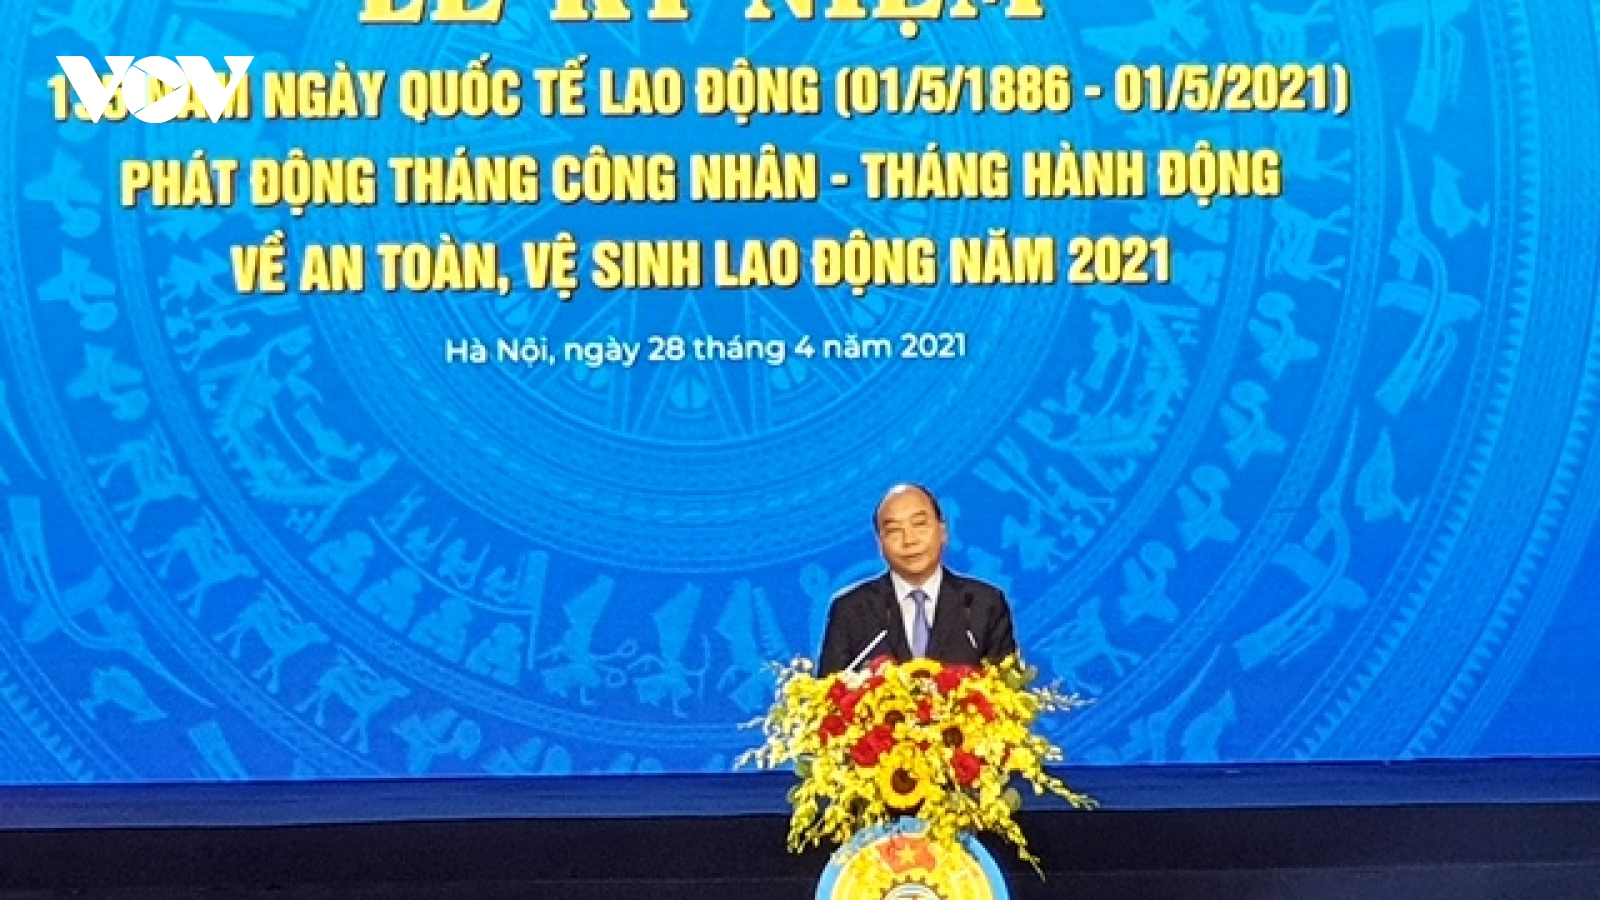 Chủ tịch nước Nguyễn Xuân Phúc dự kỷ niệm 135 năm Ngày Quốc tế Lao động